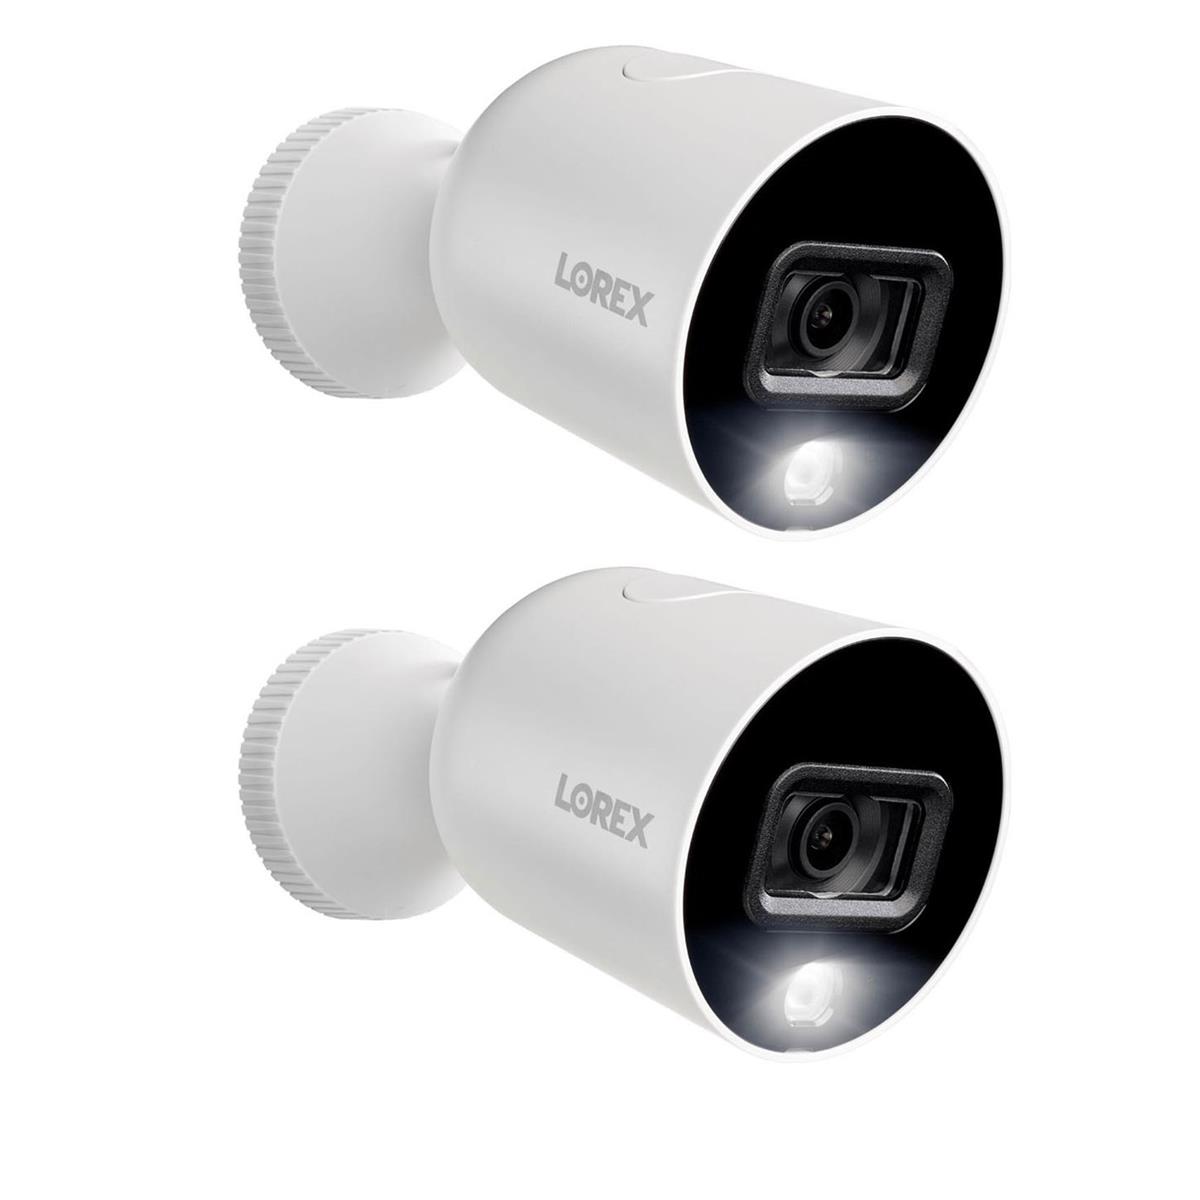 LOREX Smart Indoor/Outdoor 1080p Wi-Fi Security Cameras With Color Night Vision